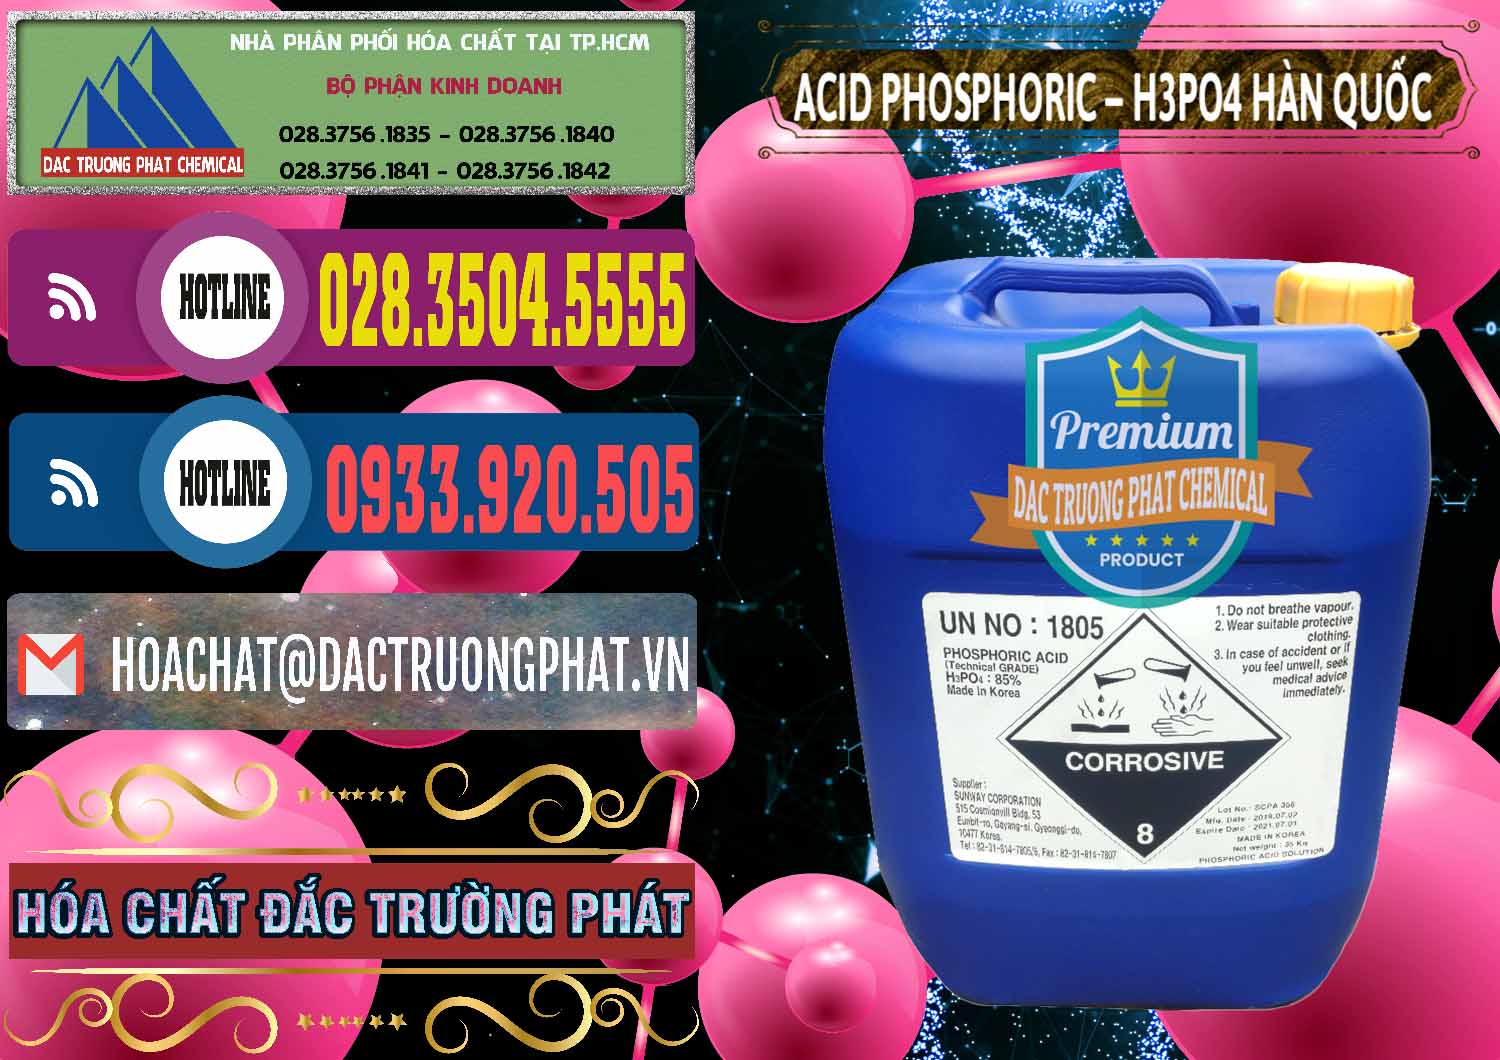 Cty chuyên bán ( phân phối ) Acid Phosphoric – H3PO4 85% Can Xanh Hàn Quốc Korea - 0016 - Nhà phân phối _ kinh doanh hóa chất tại TP.HCM - muabanhoachat.com.vn